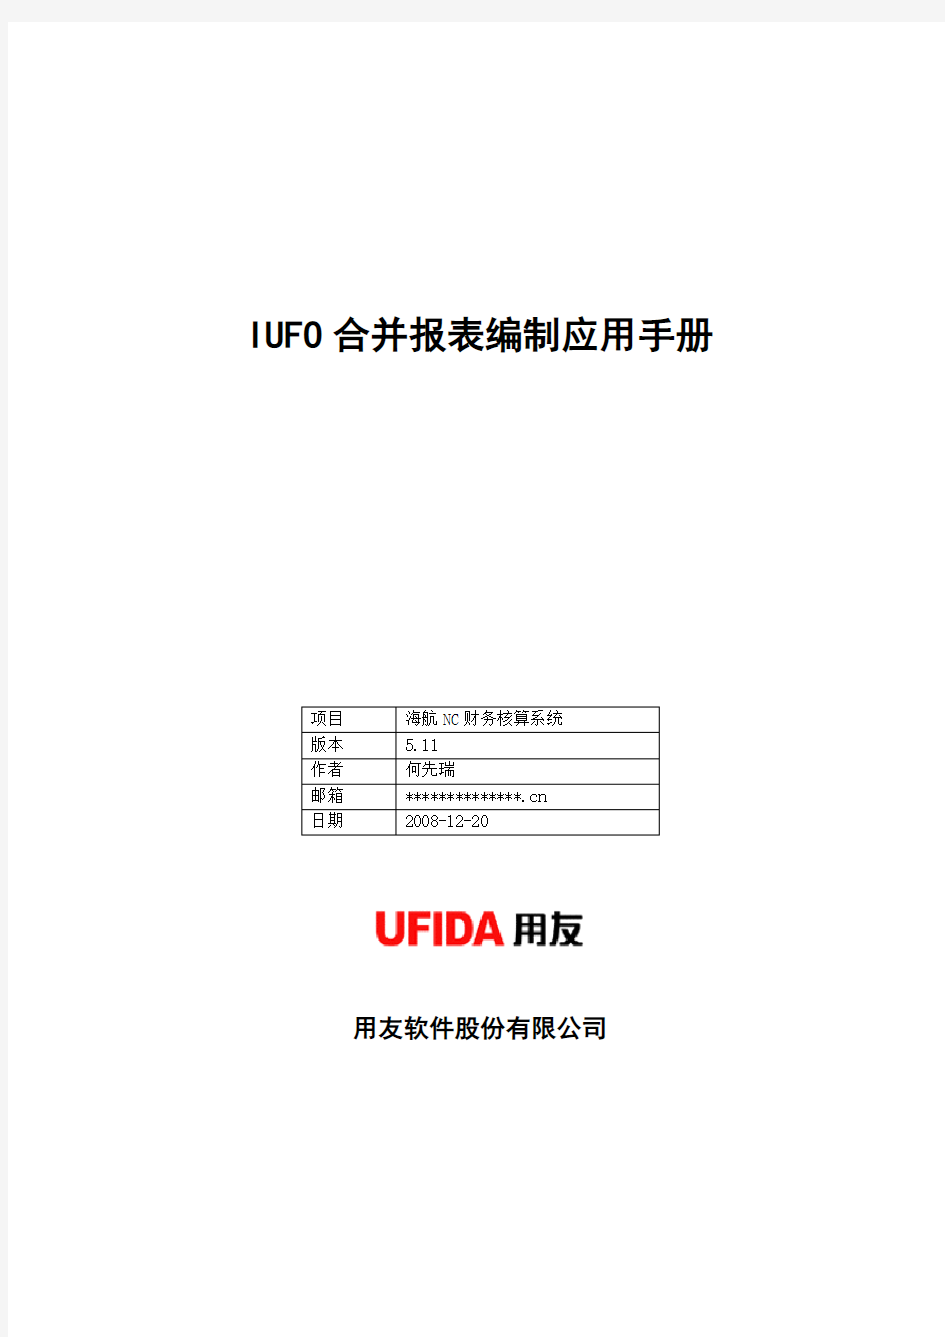 IUFO合并报表操作手册